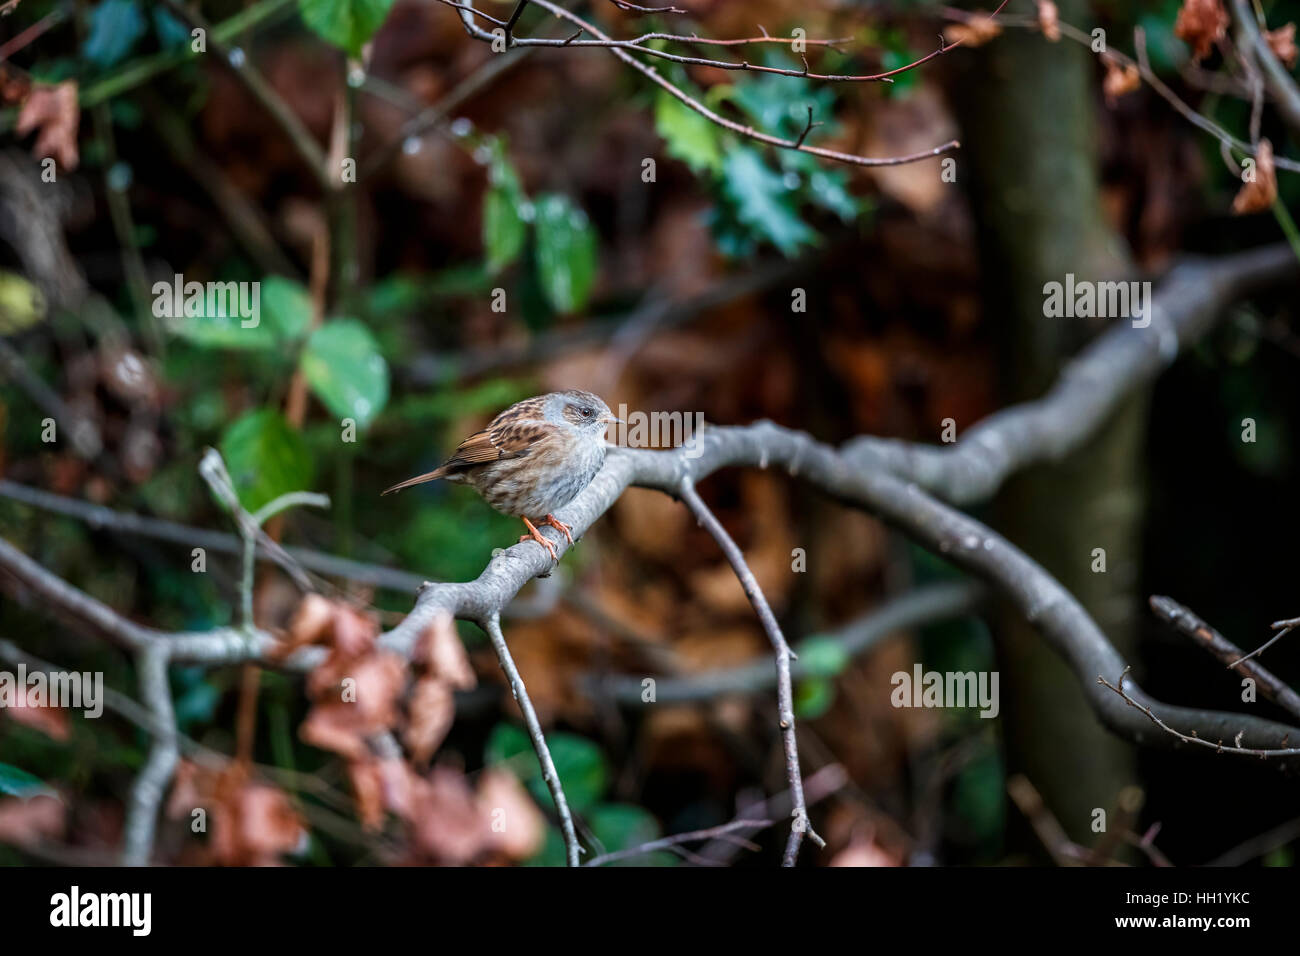 Dunnock o hedge sparrow, Prunella modularis engreído, contra el frío, donde se posan en una rama en un jardín es de Surrey, en el sudeste de Inglaterra en invierno Foto de stock